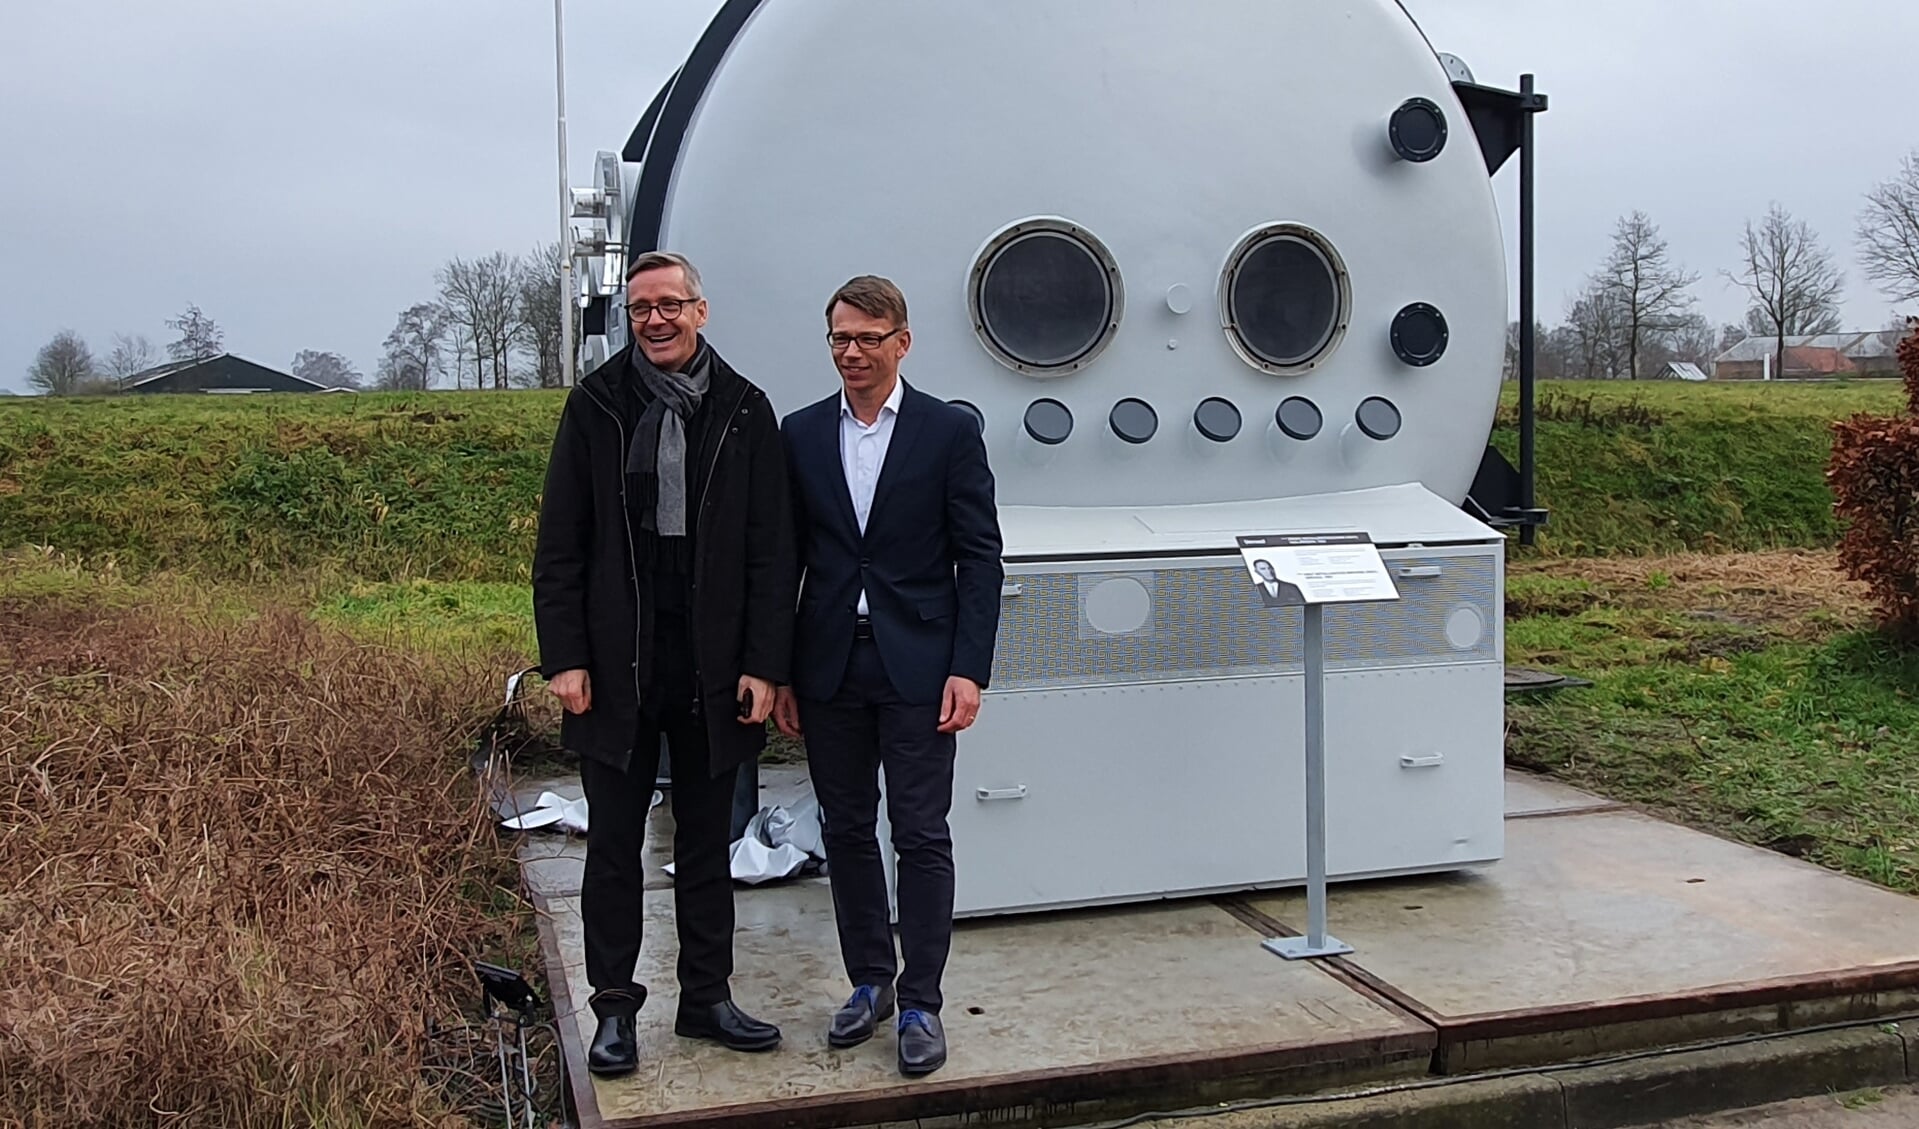 CEO’s Anders Byriel (l) en Jasper Hoek bij het Verosol monument. Foto: Rob Weeber